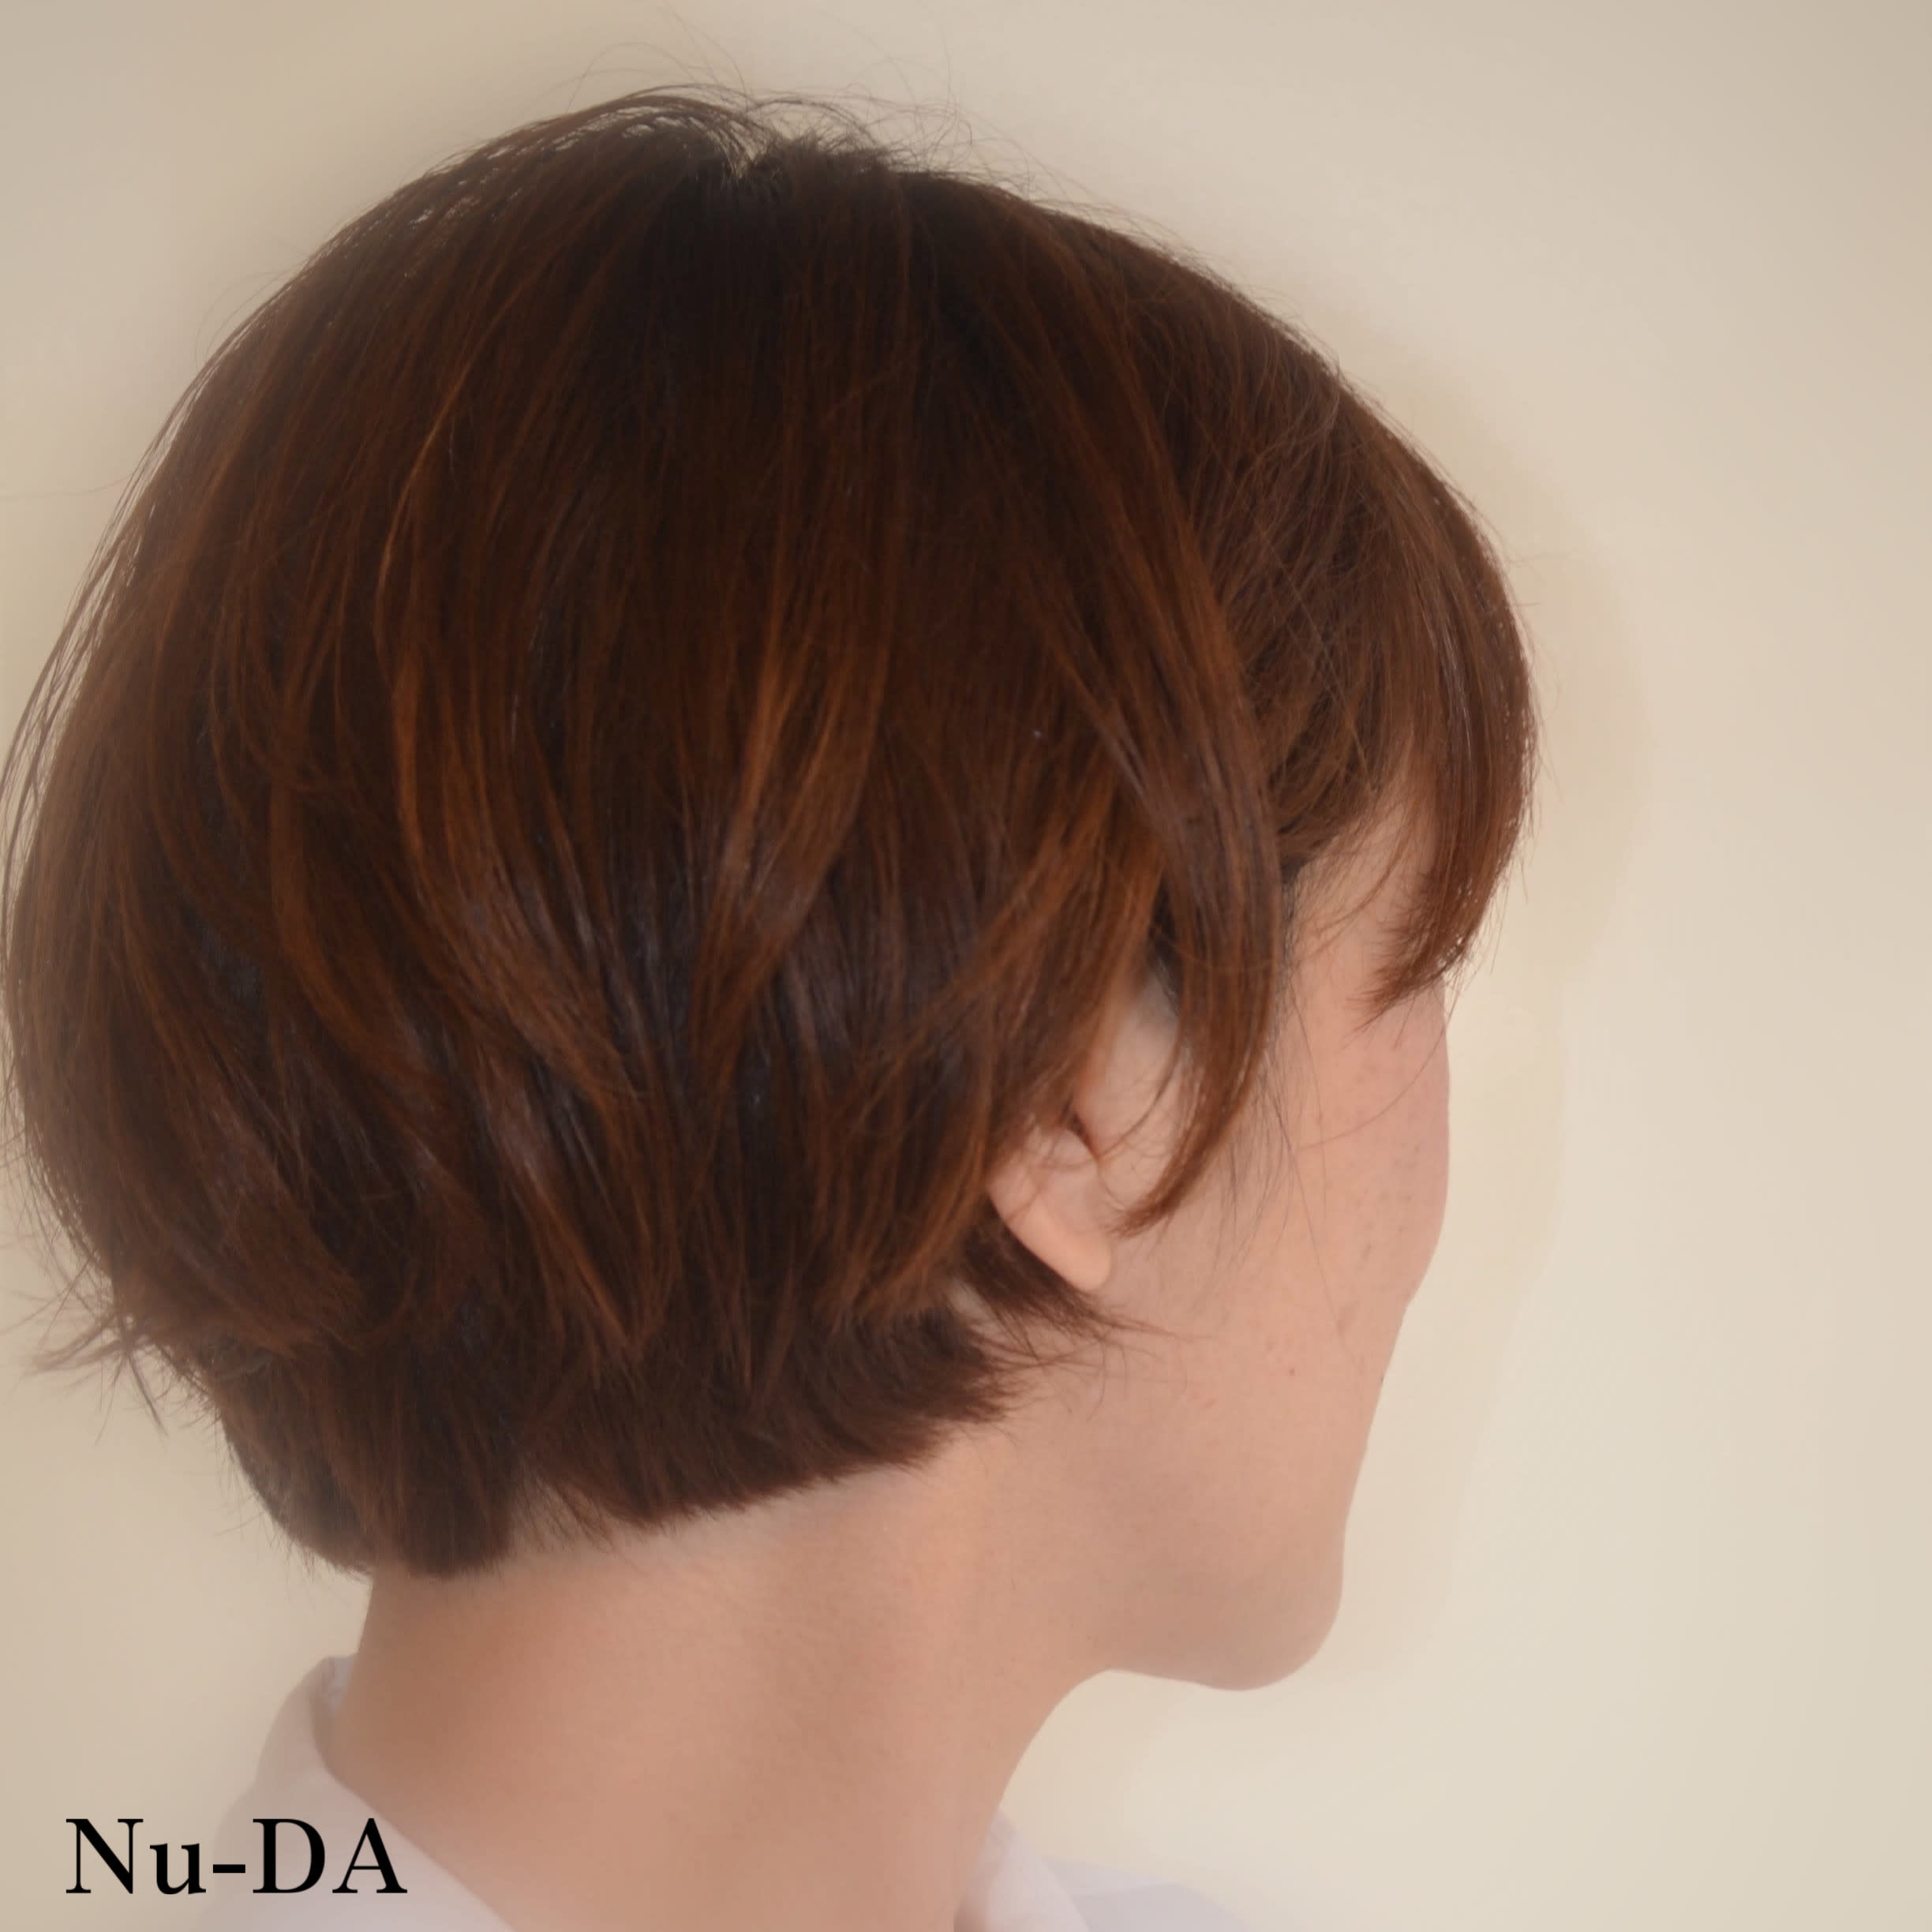 hair Nu-DA【ヘアヌーダ】のスタイル紹介。【Nu-DA】ショートボブ